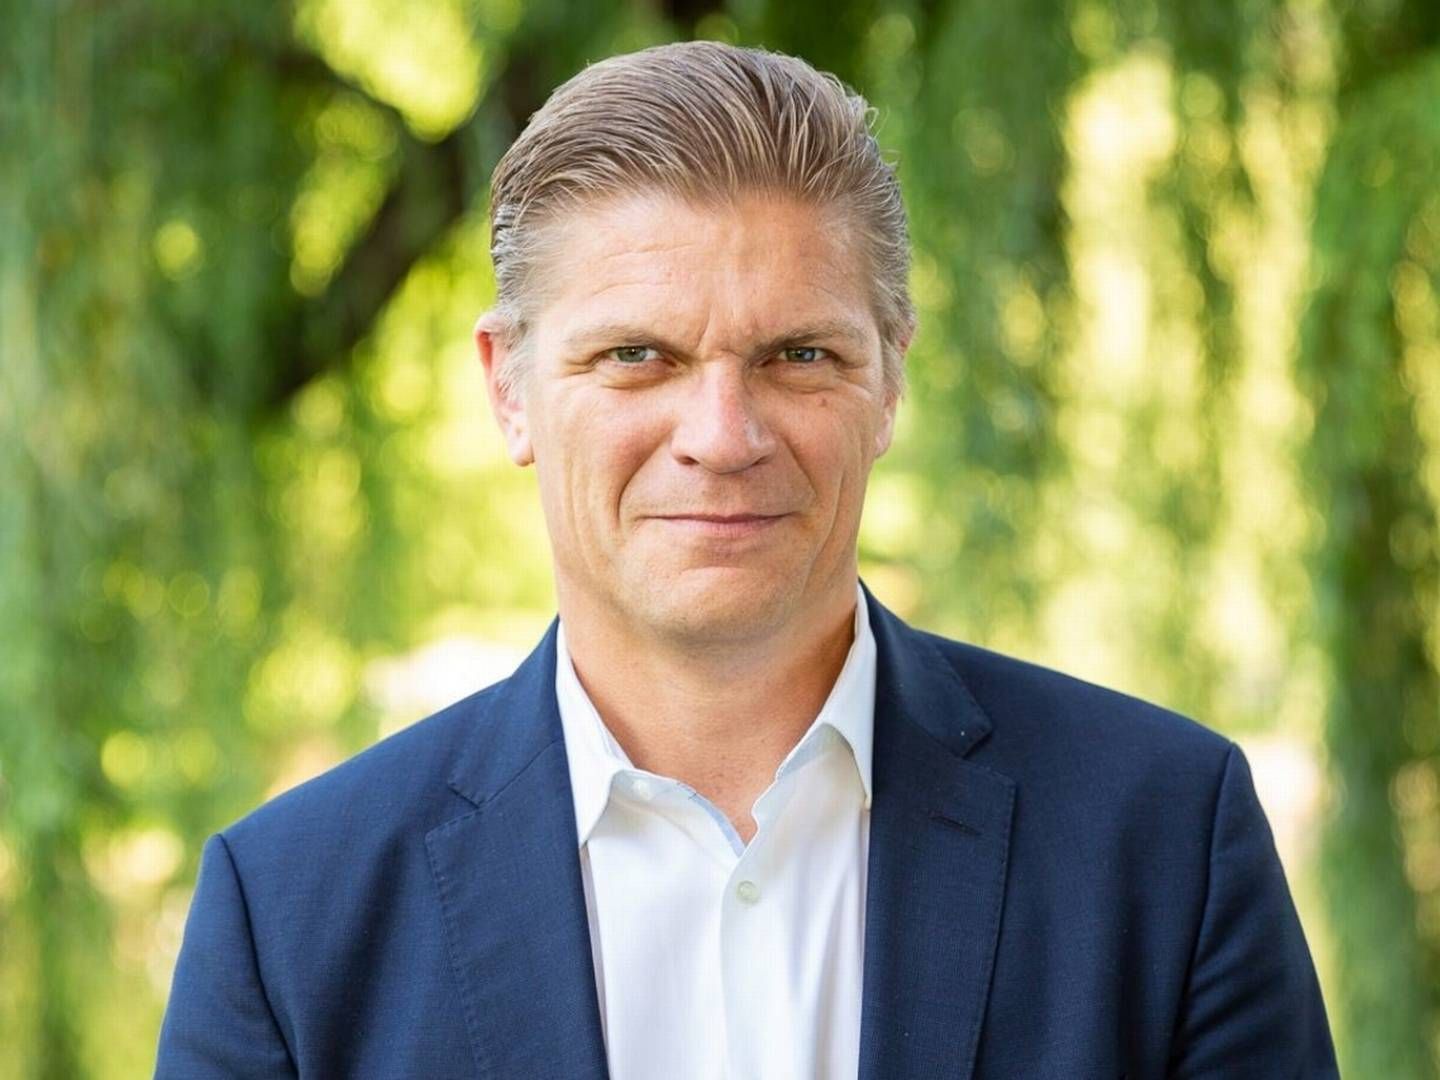 Chefen for europæiske markeder hos Nasdaq, Bjørn Sibbern, stopper ved årsskiftet. | Photo: Nasdaq/PR